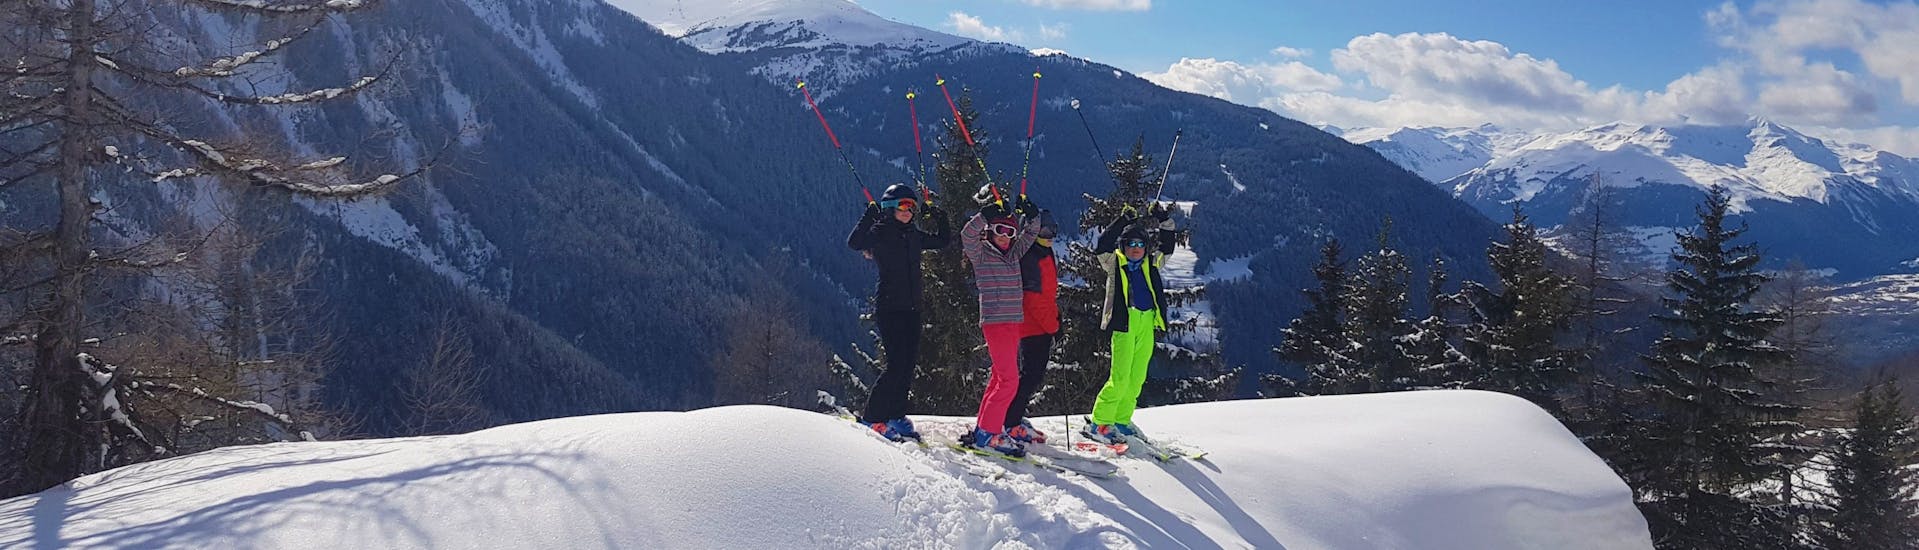 Des enfants font des progrès pendant leur leur Cours particulier de ski Enfants & Ados (dès 6 ans) avec Evolution 2 Peisey Vallandry.